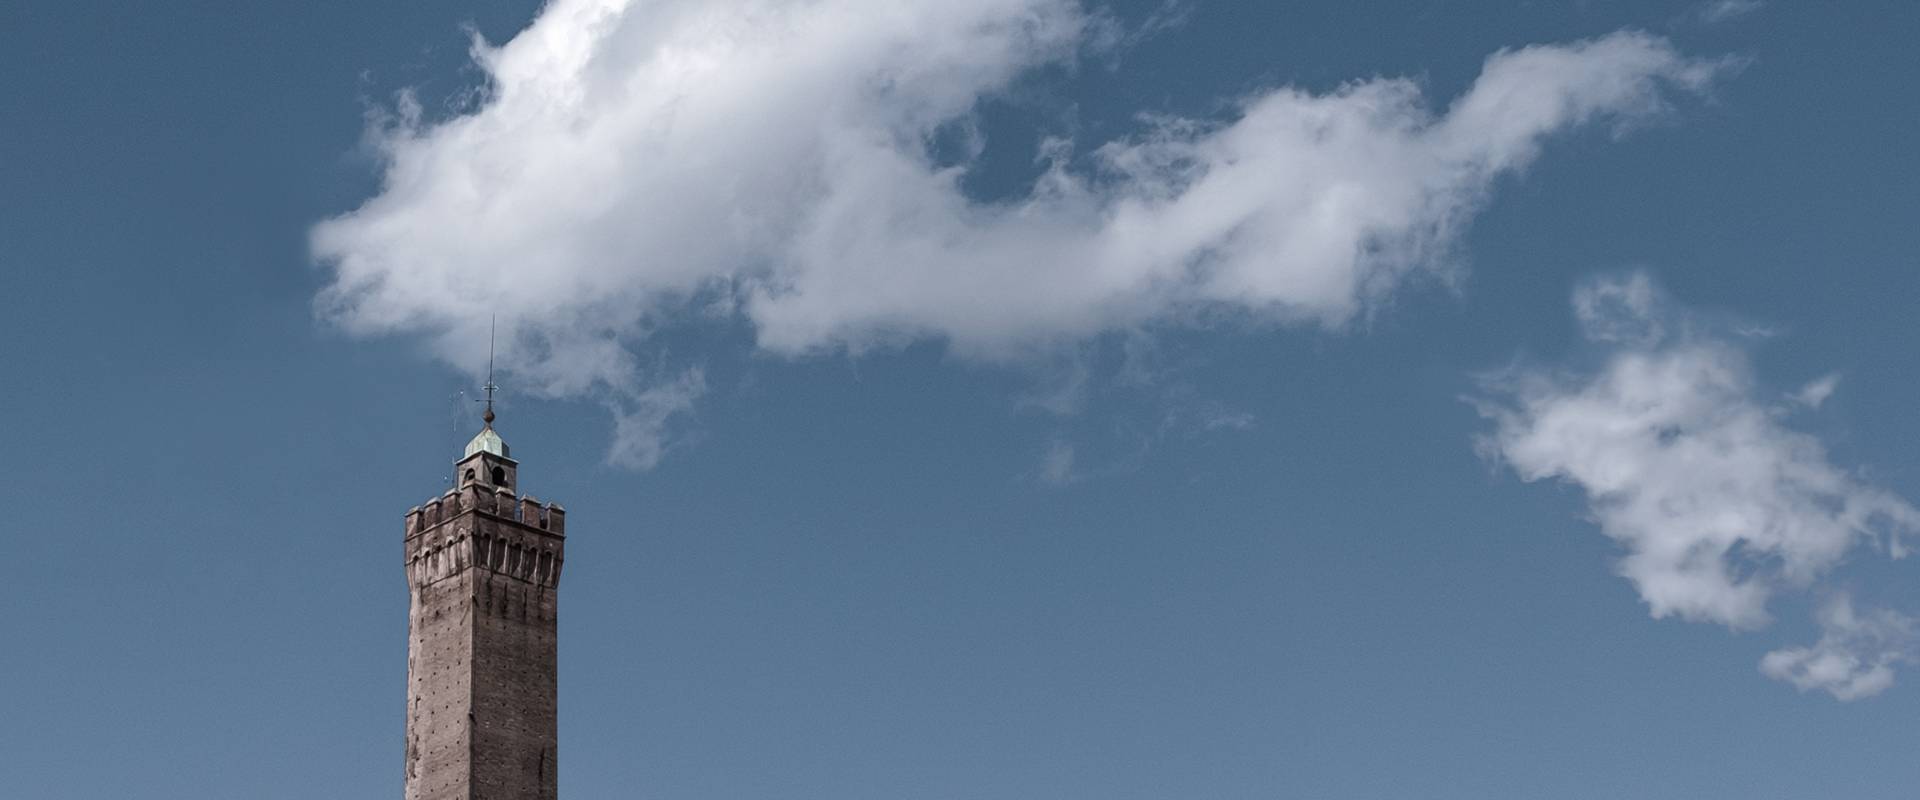 L'apice della Torre degli Asinelli foto di Marco Nenzioni